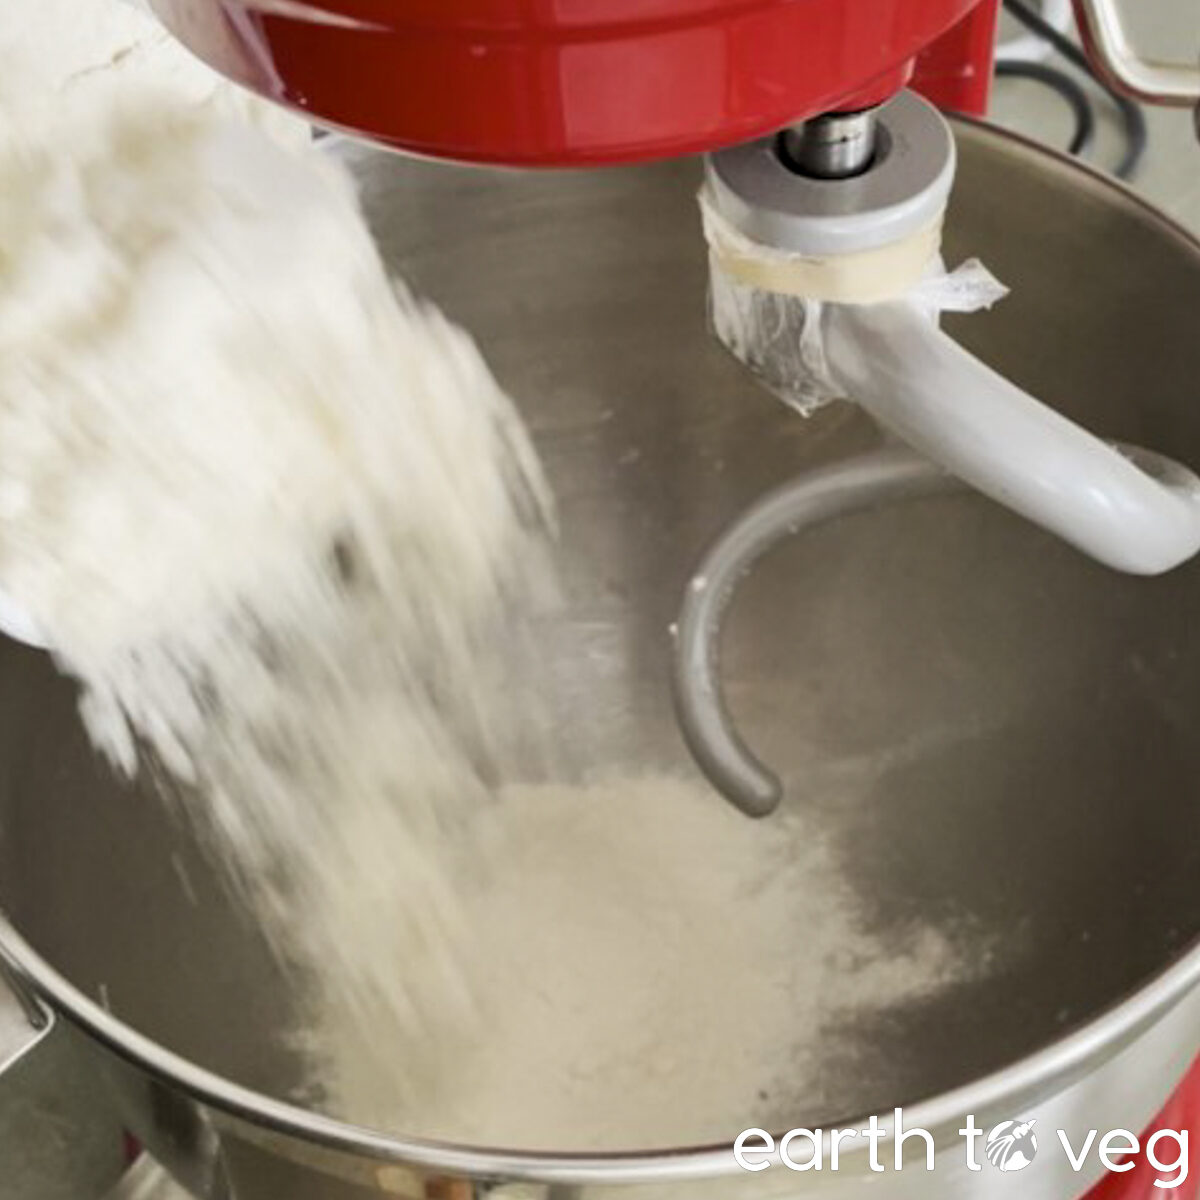 White wheat flour is added to KitchenAid stand mixer bowl.